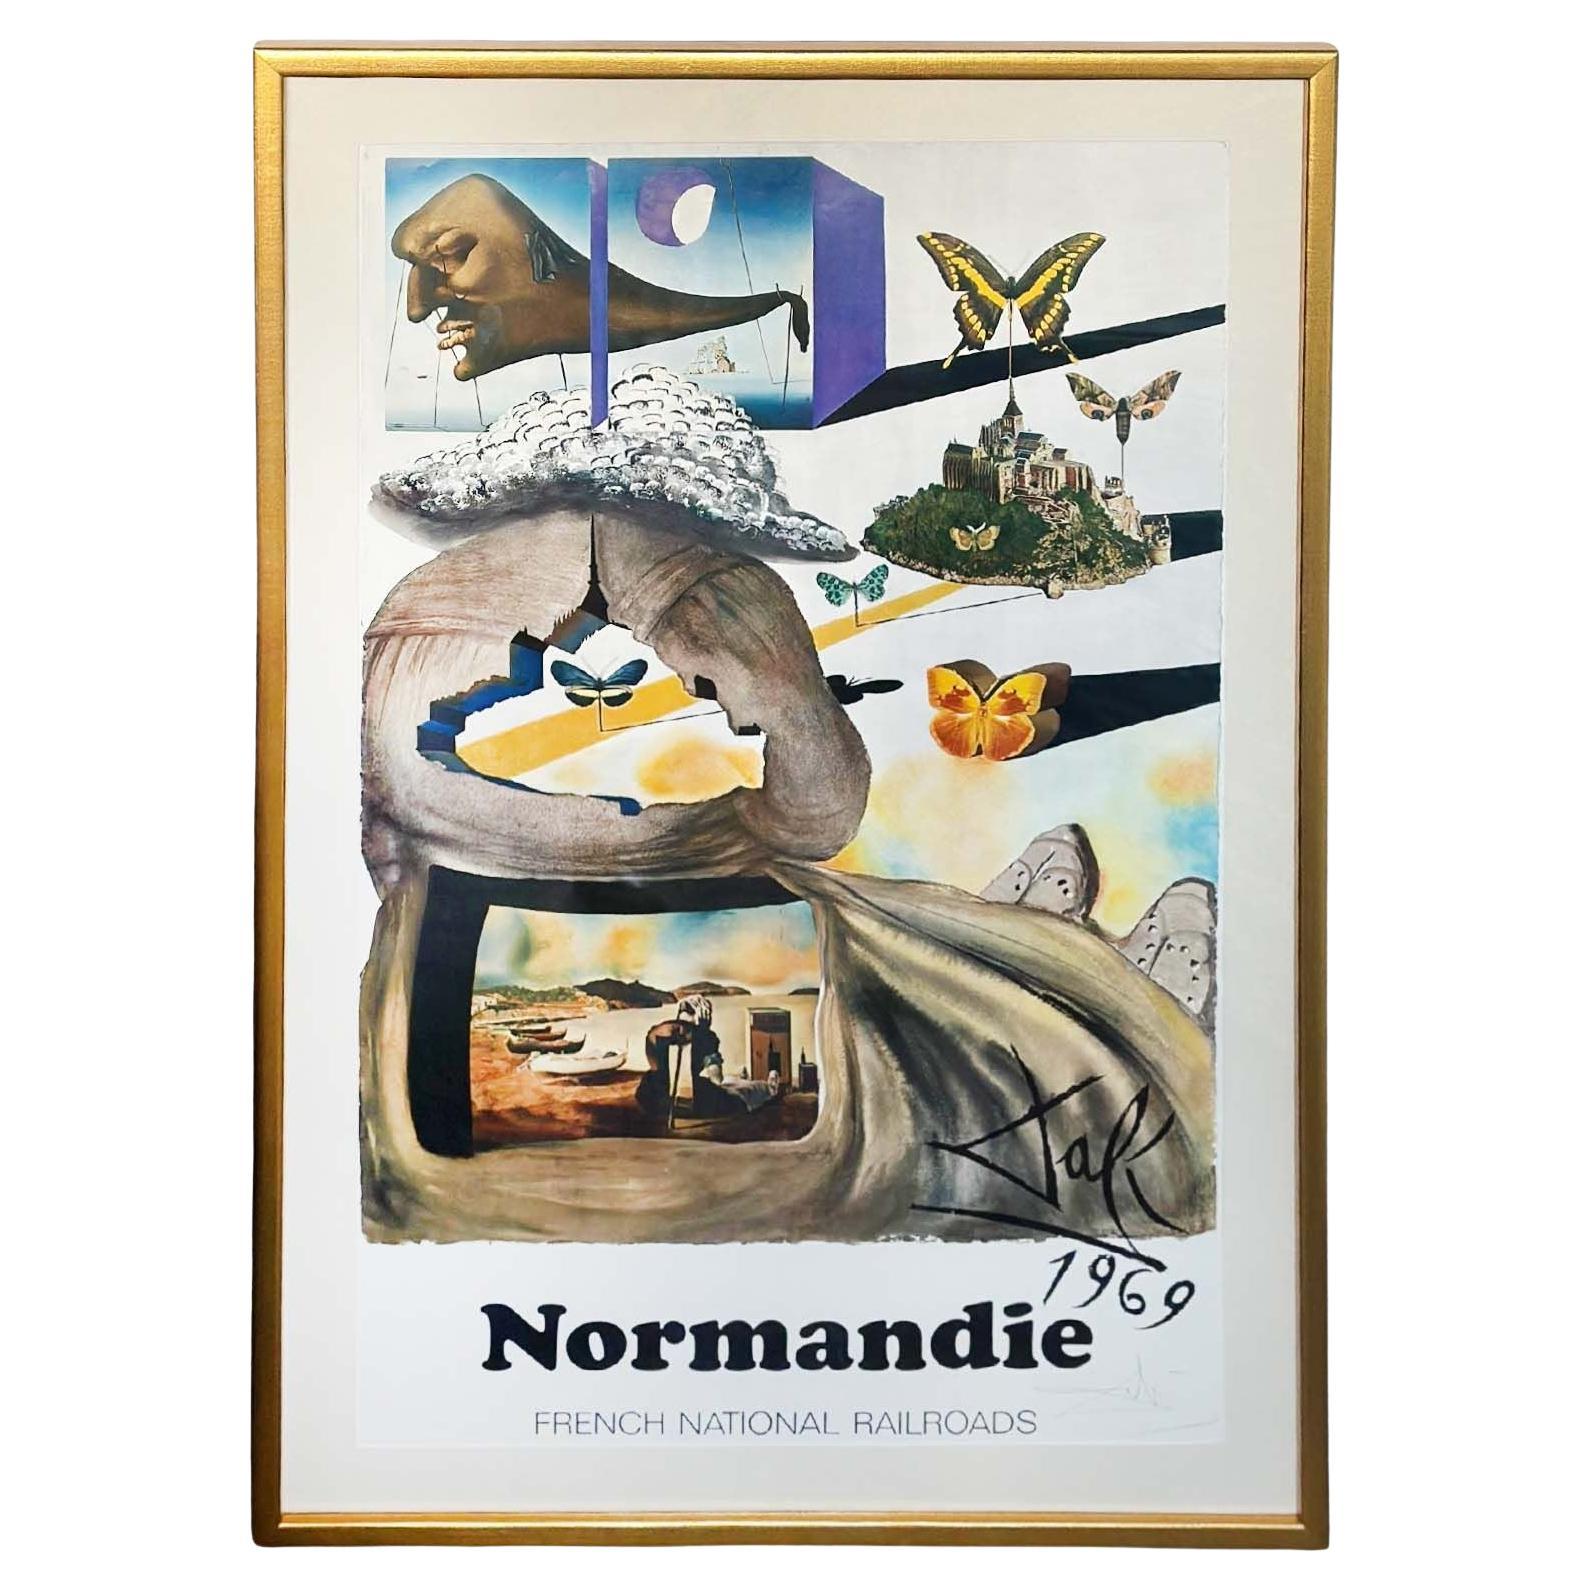 Surrealistisches Lithografie-Plakat "Normandie" von Salvador Dalí, 1969